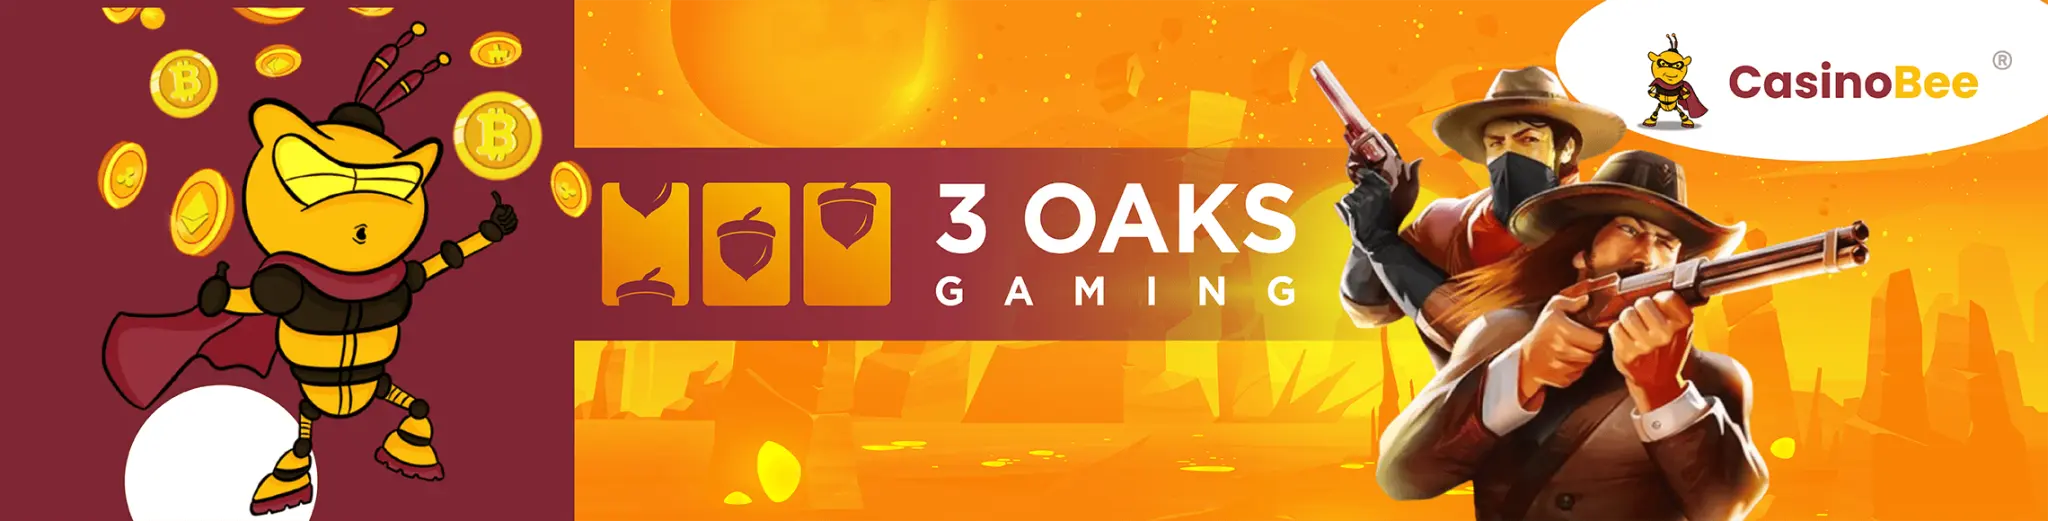 3 oaks gaming casinos